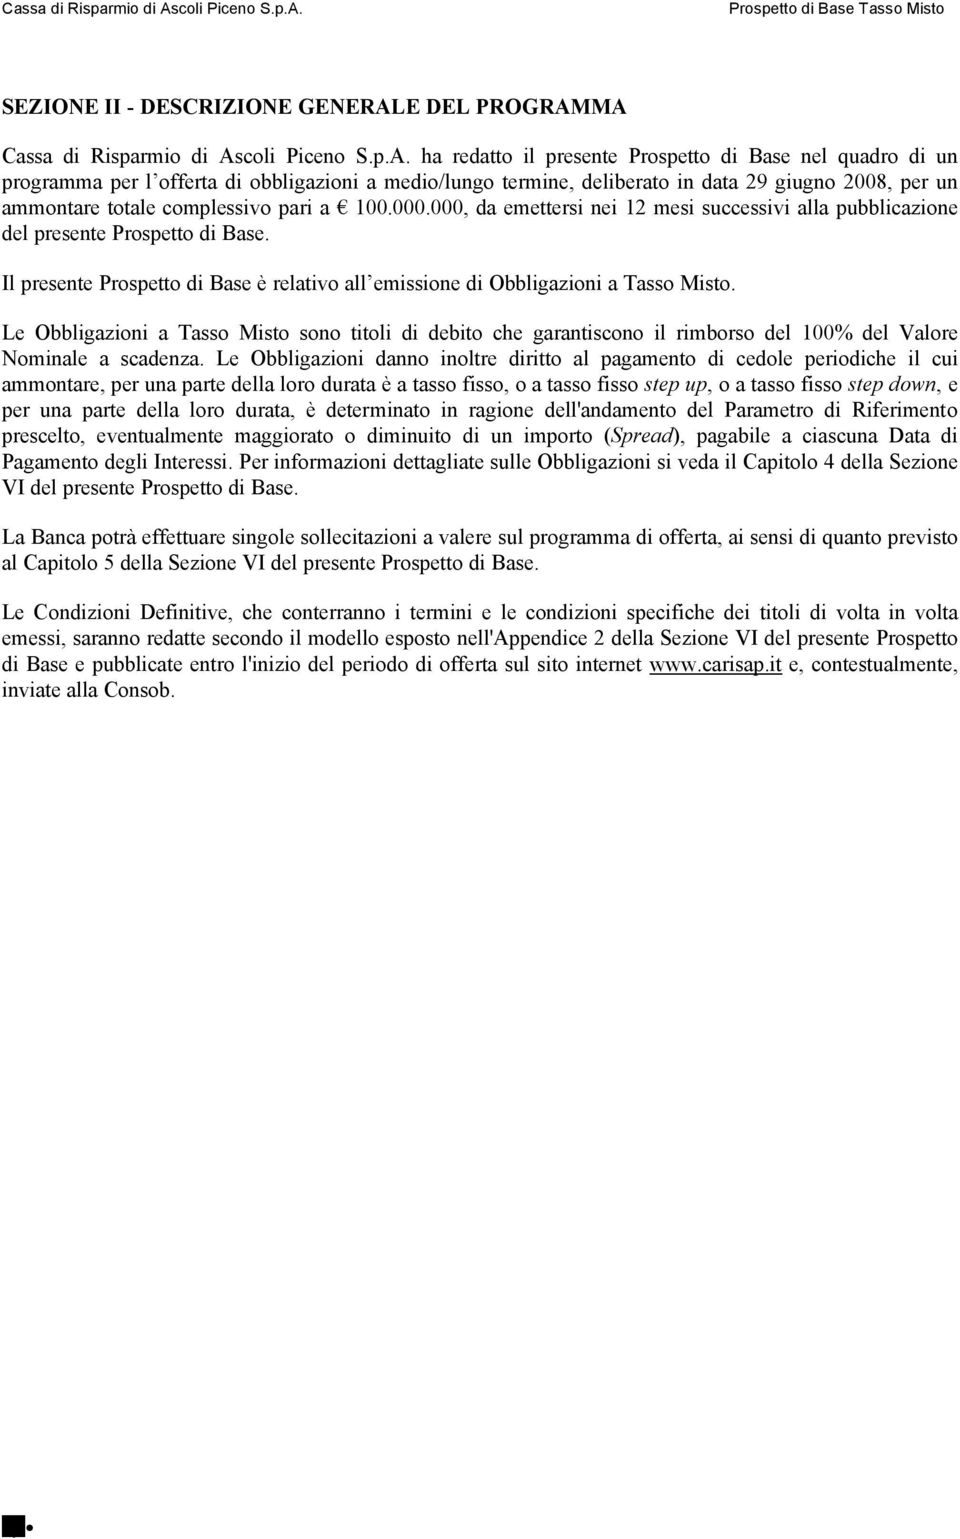 MA Cassa di Risparmio di Ascoli Piceno S.p.A. ha redatto il presente Prospetto di Base nel quadro di un programma per l offerta di obbligazioni a medio/lungo termine, deliberato in data 29 giugno